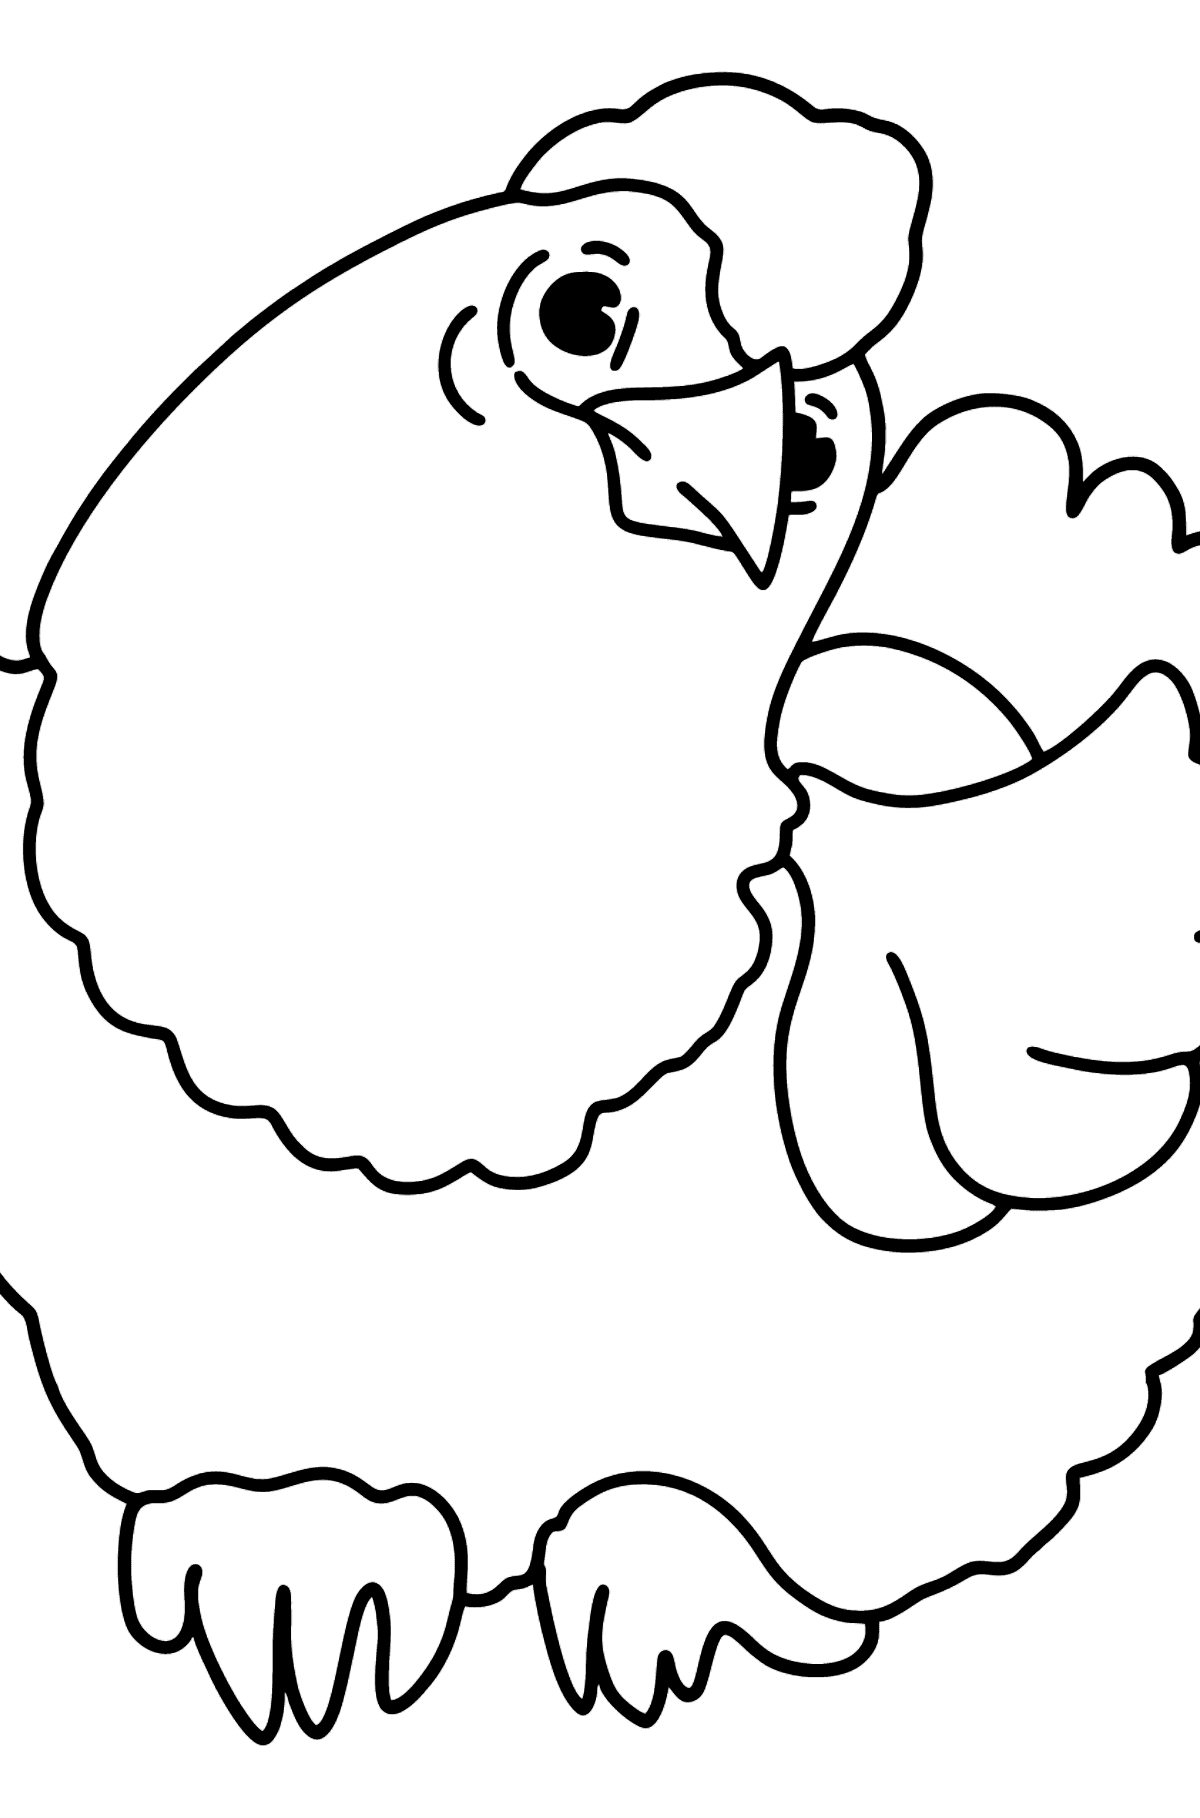 Dibujo para colorear simple con un pollo - Dibujos para Colorear para Niños